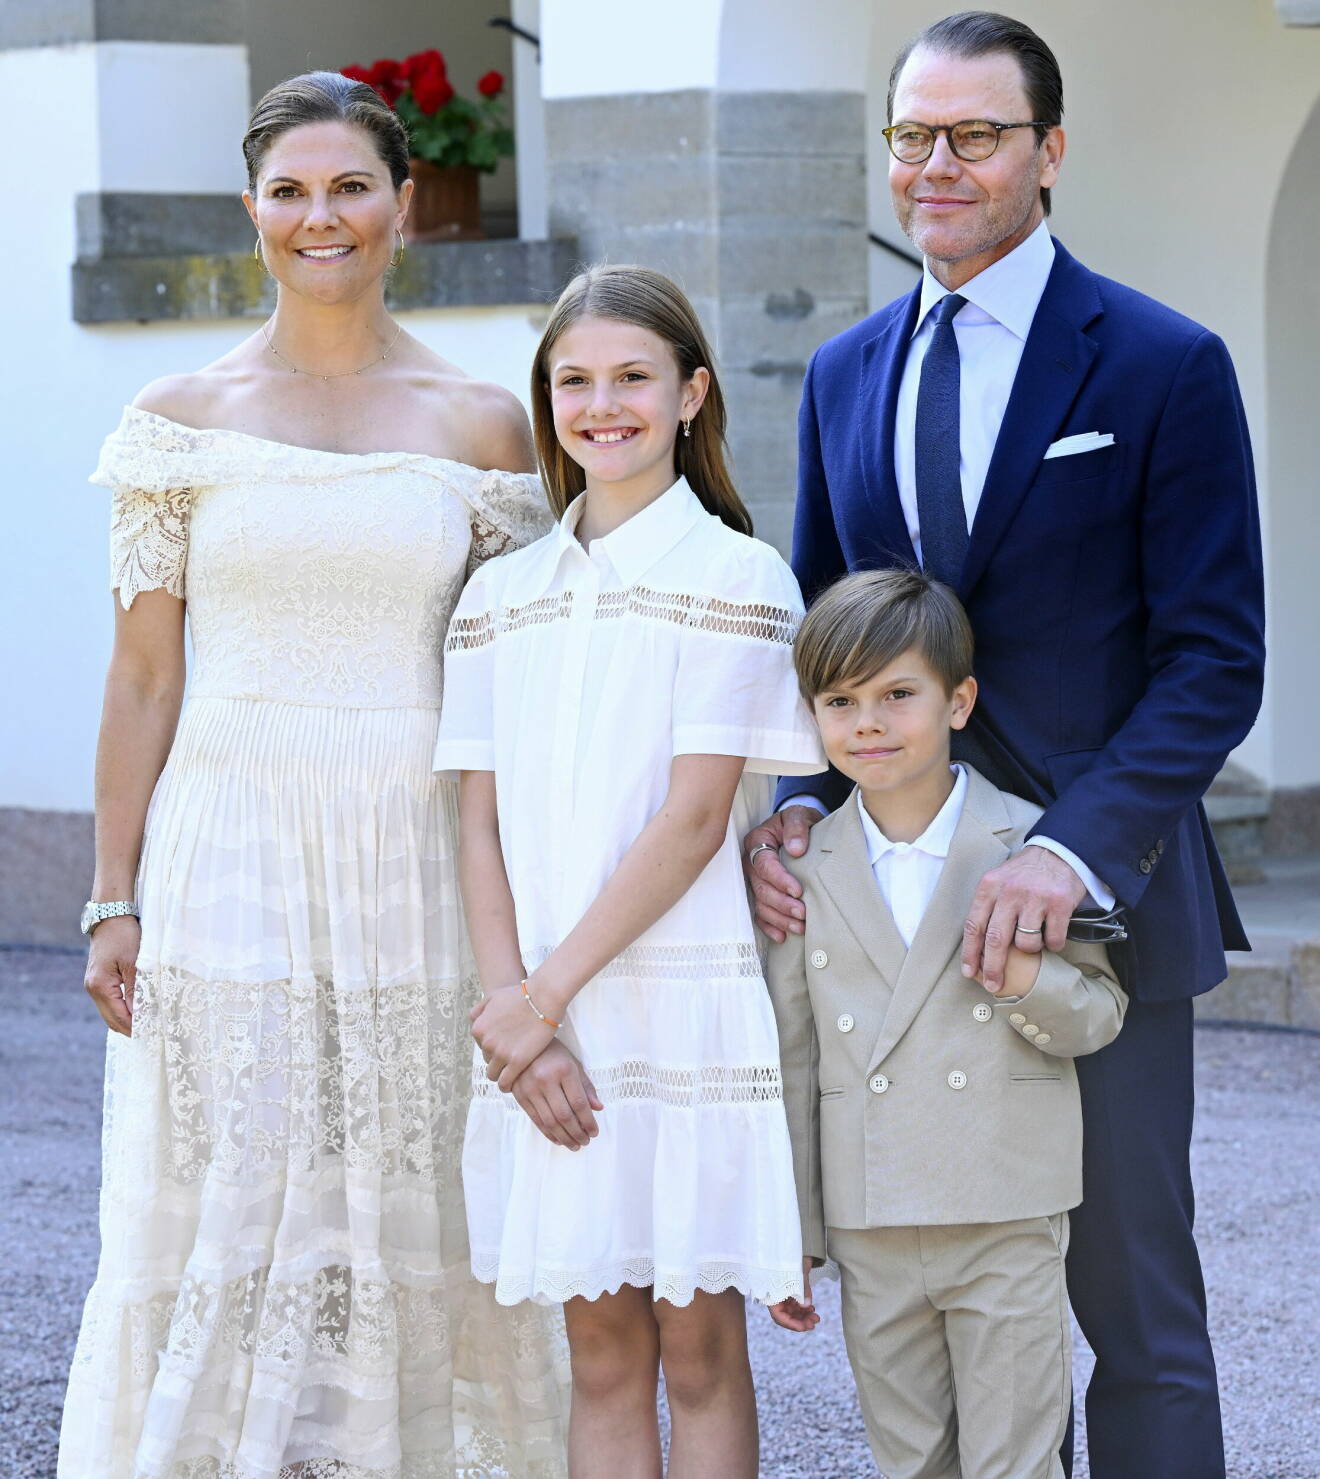 Kronprinsessan Victoria tillsammans med prins Daniel och barnen prinsessan Estelle och prins Oscar i samband med firandet av kronprinsessan Victorias födelsedag på Sollidens slott på Öland.